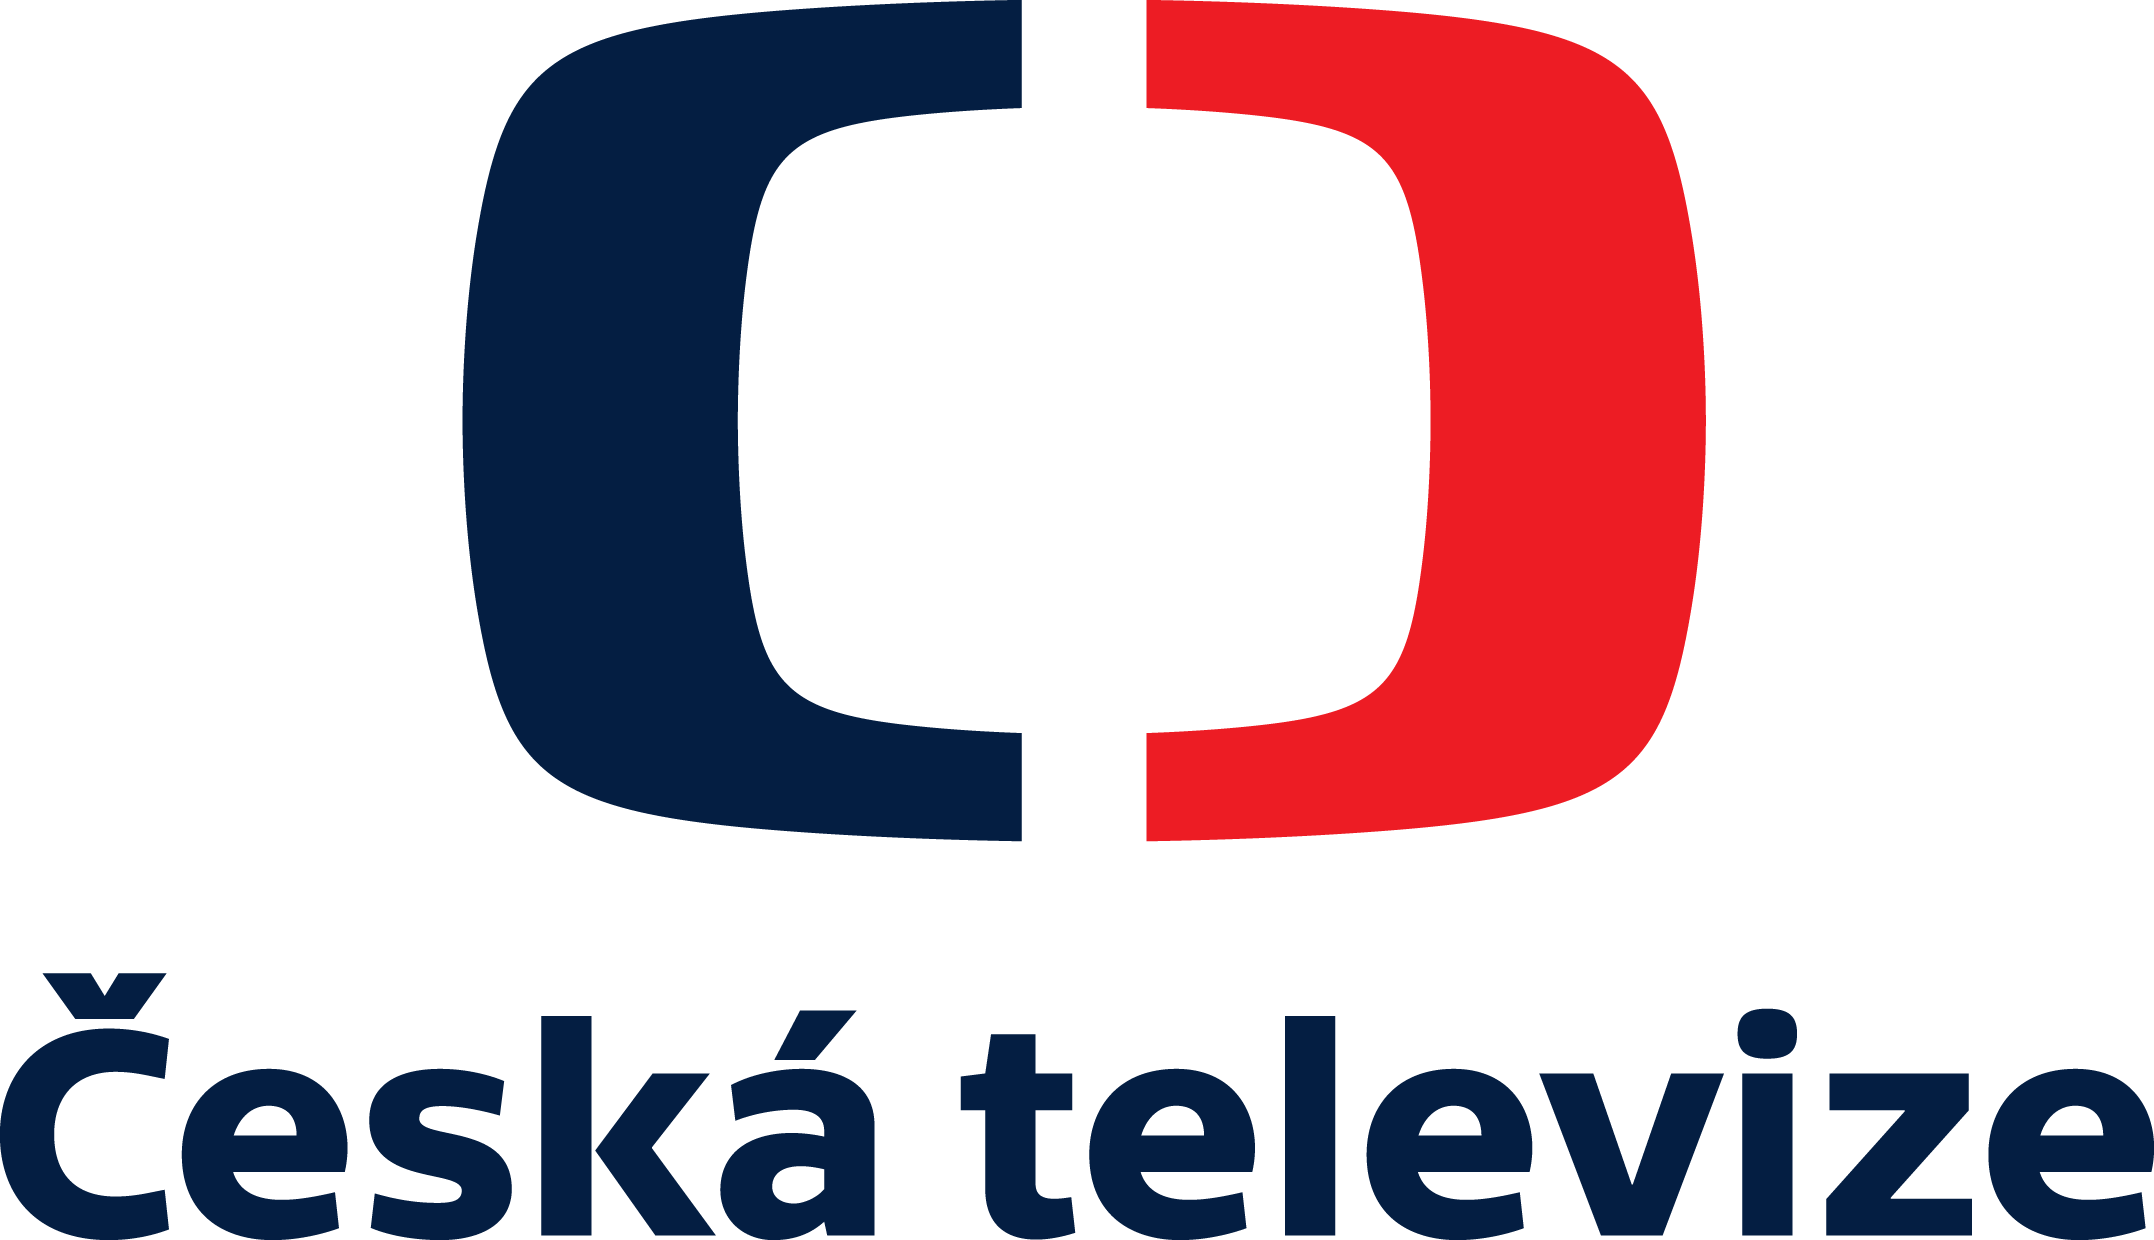 Česká televize logo